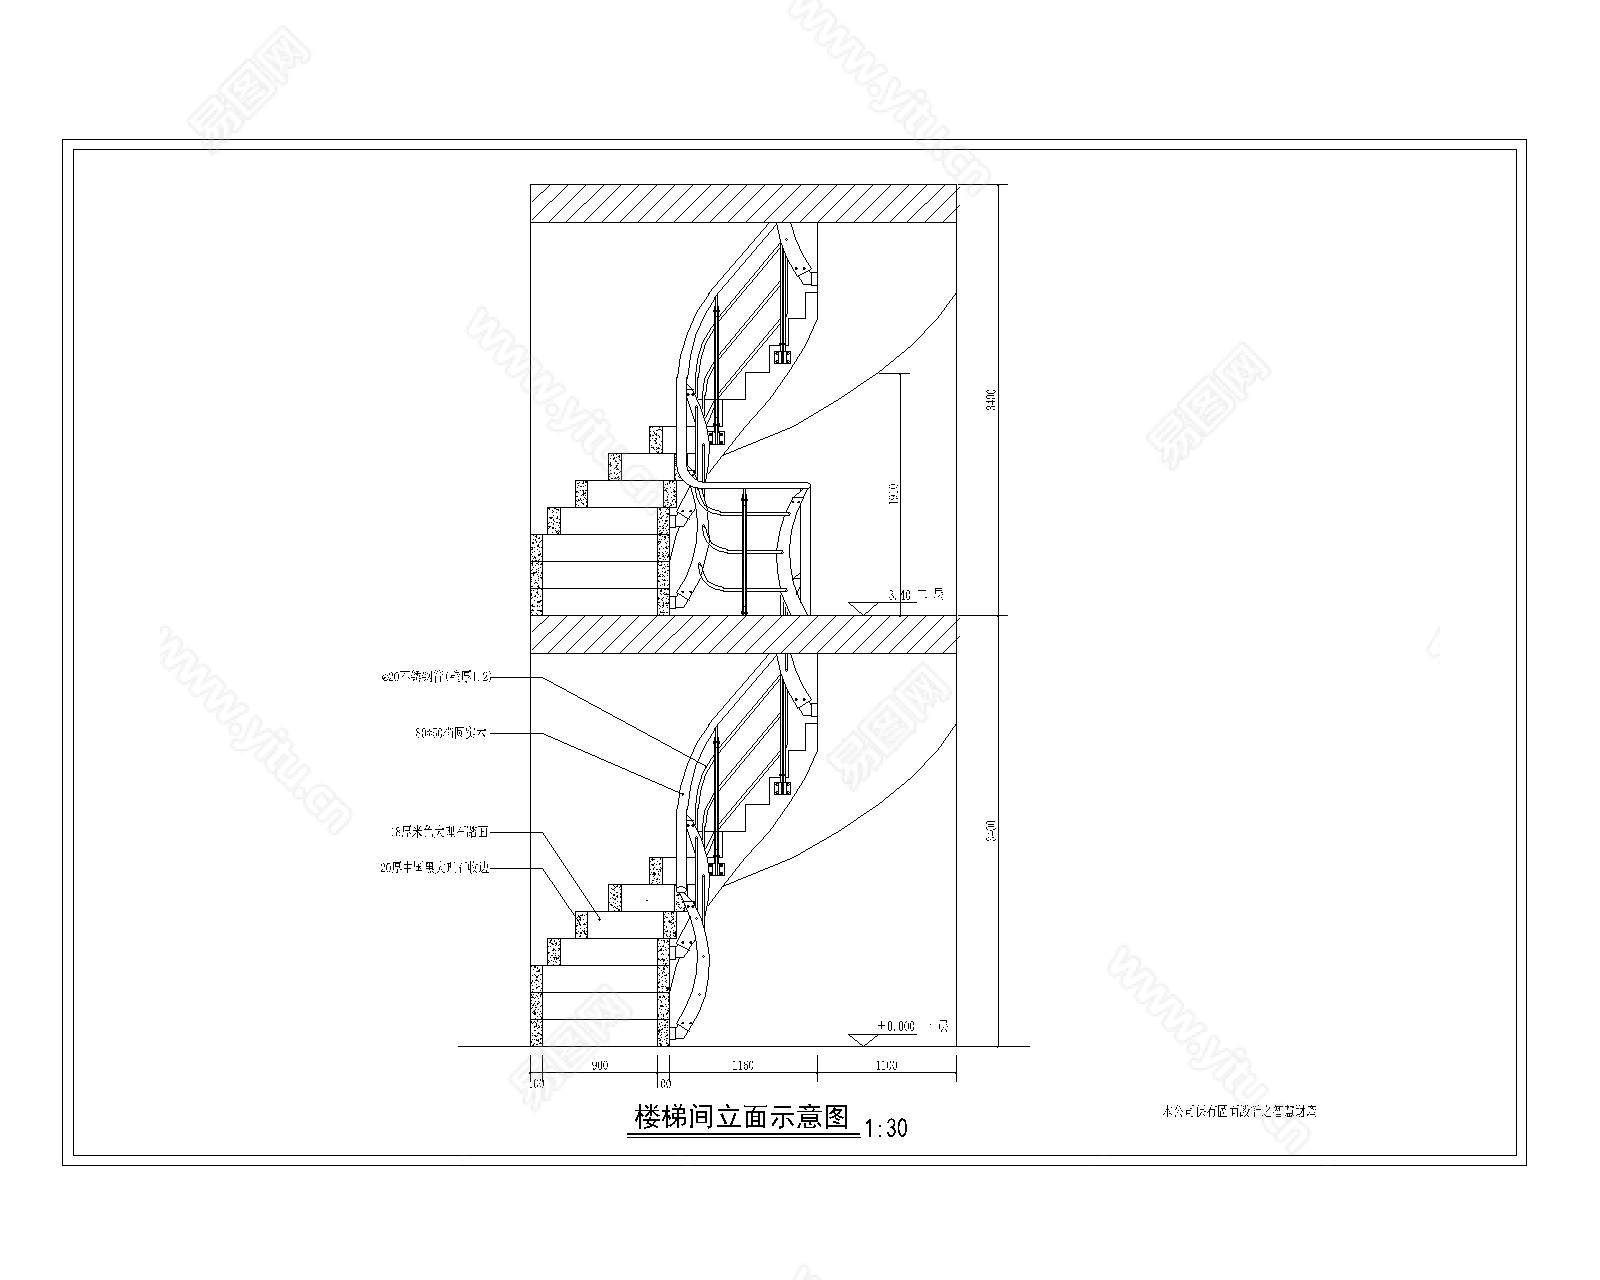 【模袋云设计】楼梯 - 帮助中心 - 酷家乐云设计